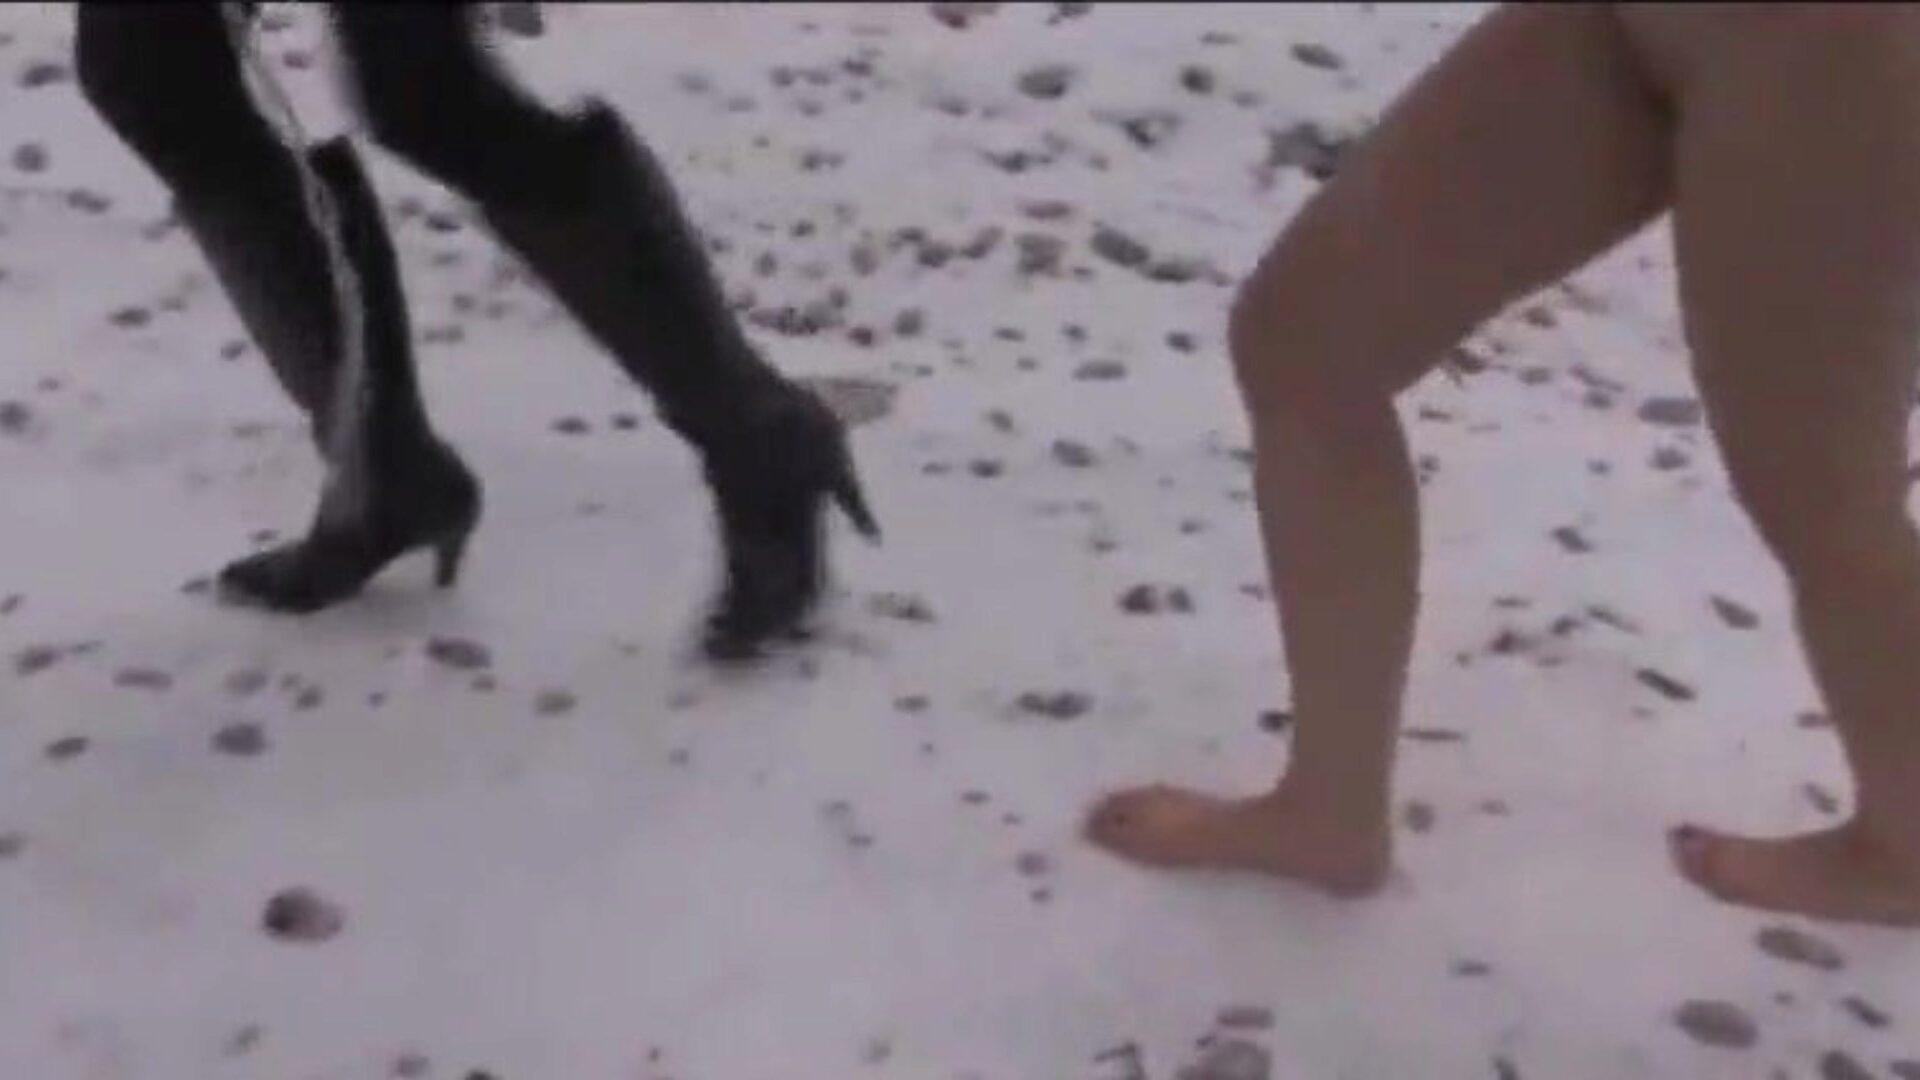 brandi ropstvo i štovanje stopala u snijegu